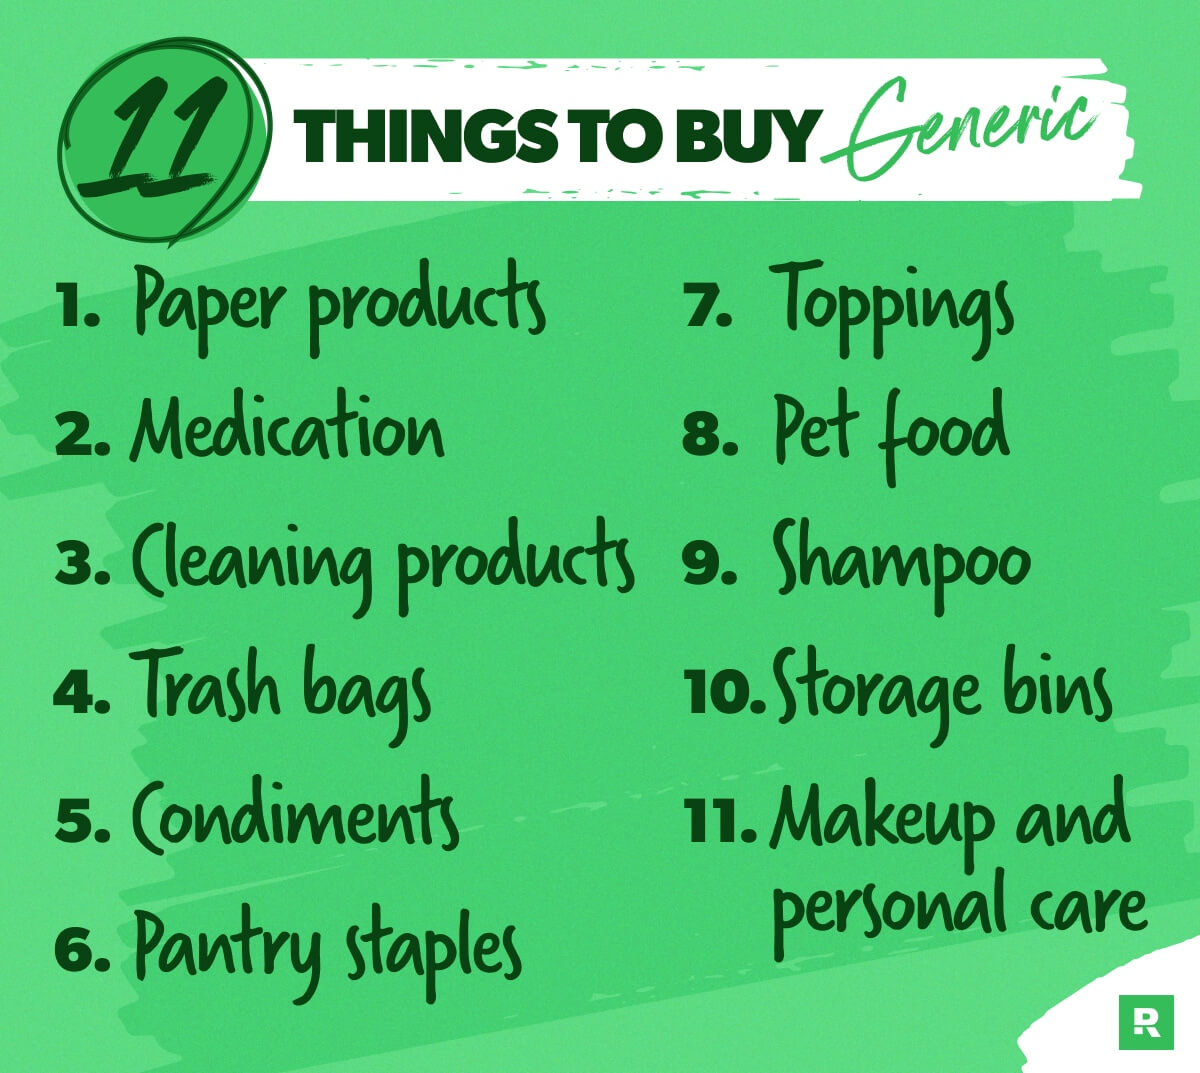 11 things to buy generic